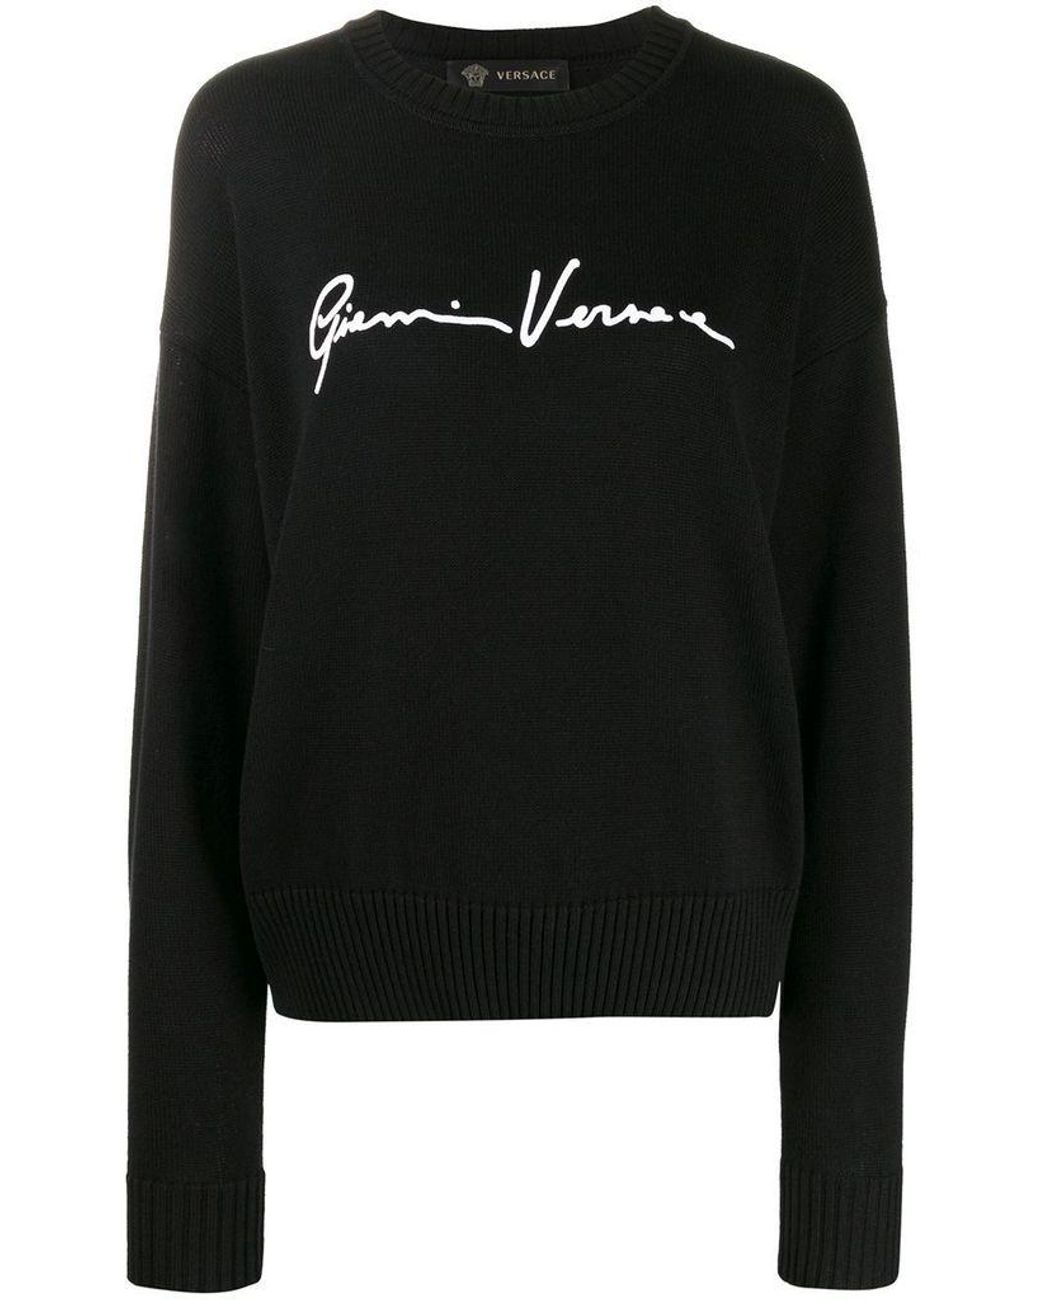 Versace Women's A85556a233106a1008 Black Cotton Sweater - Lyst